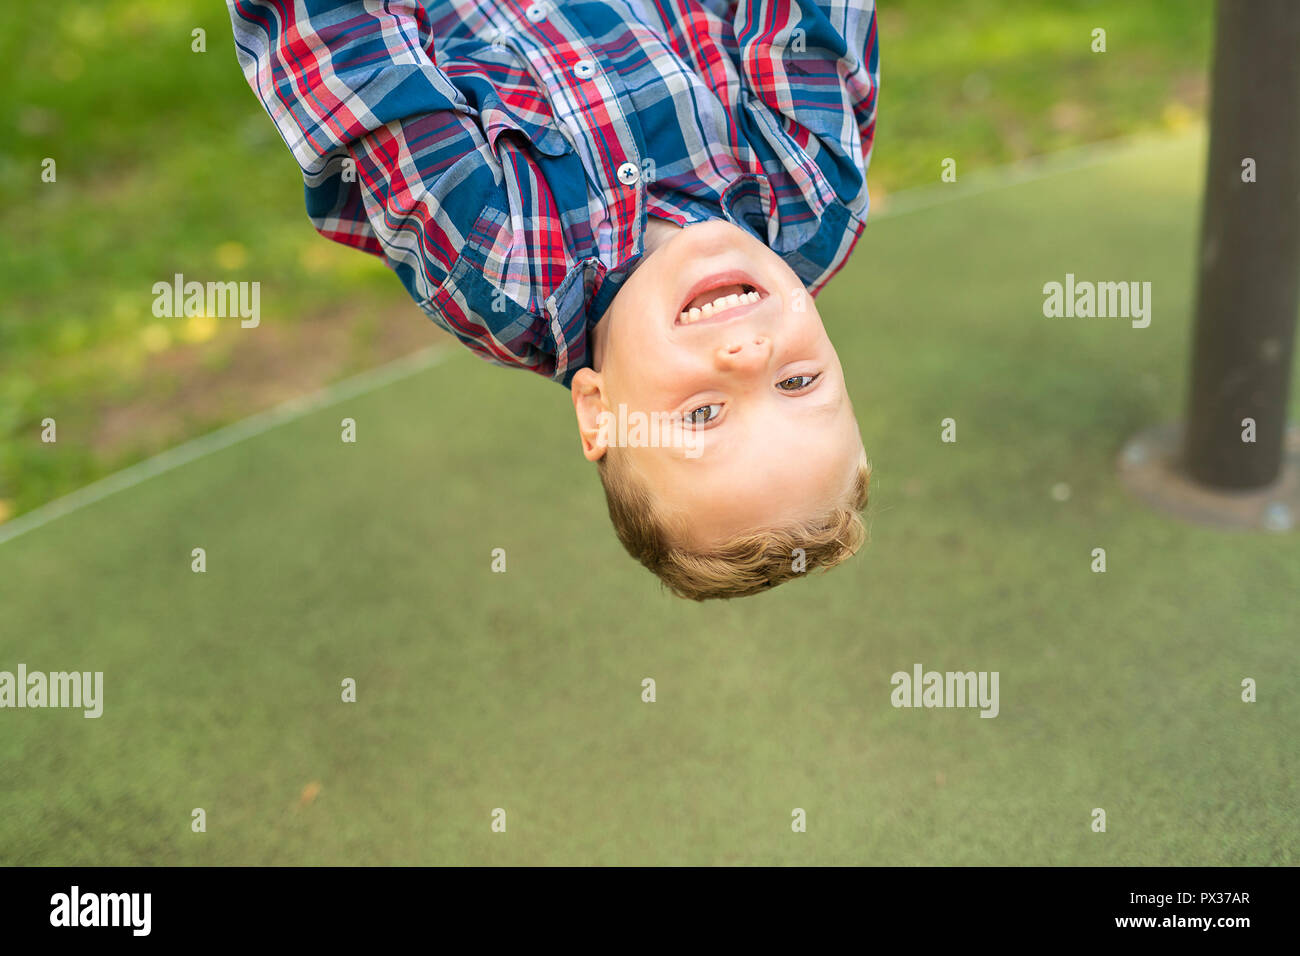 Eine nette junge kopfüber auf einem Spielplatz Stockfoto